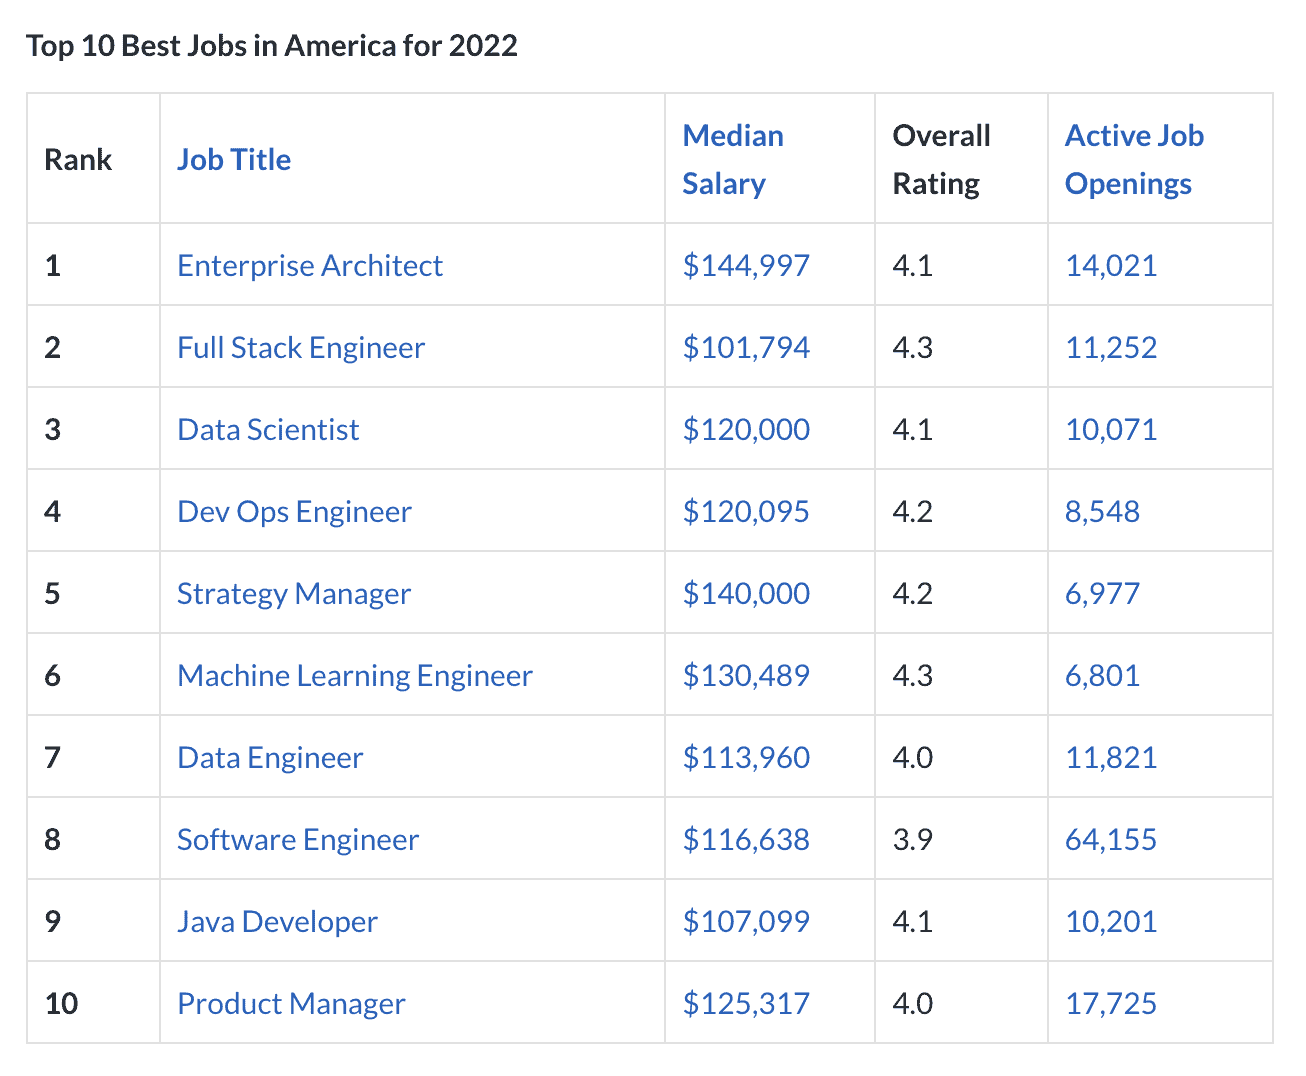 Top 10 Best Jobs in America for 2022 according to Glassdoor.